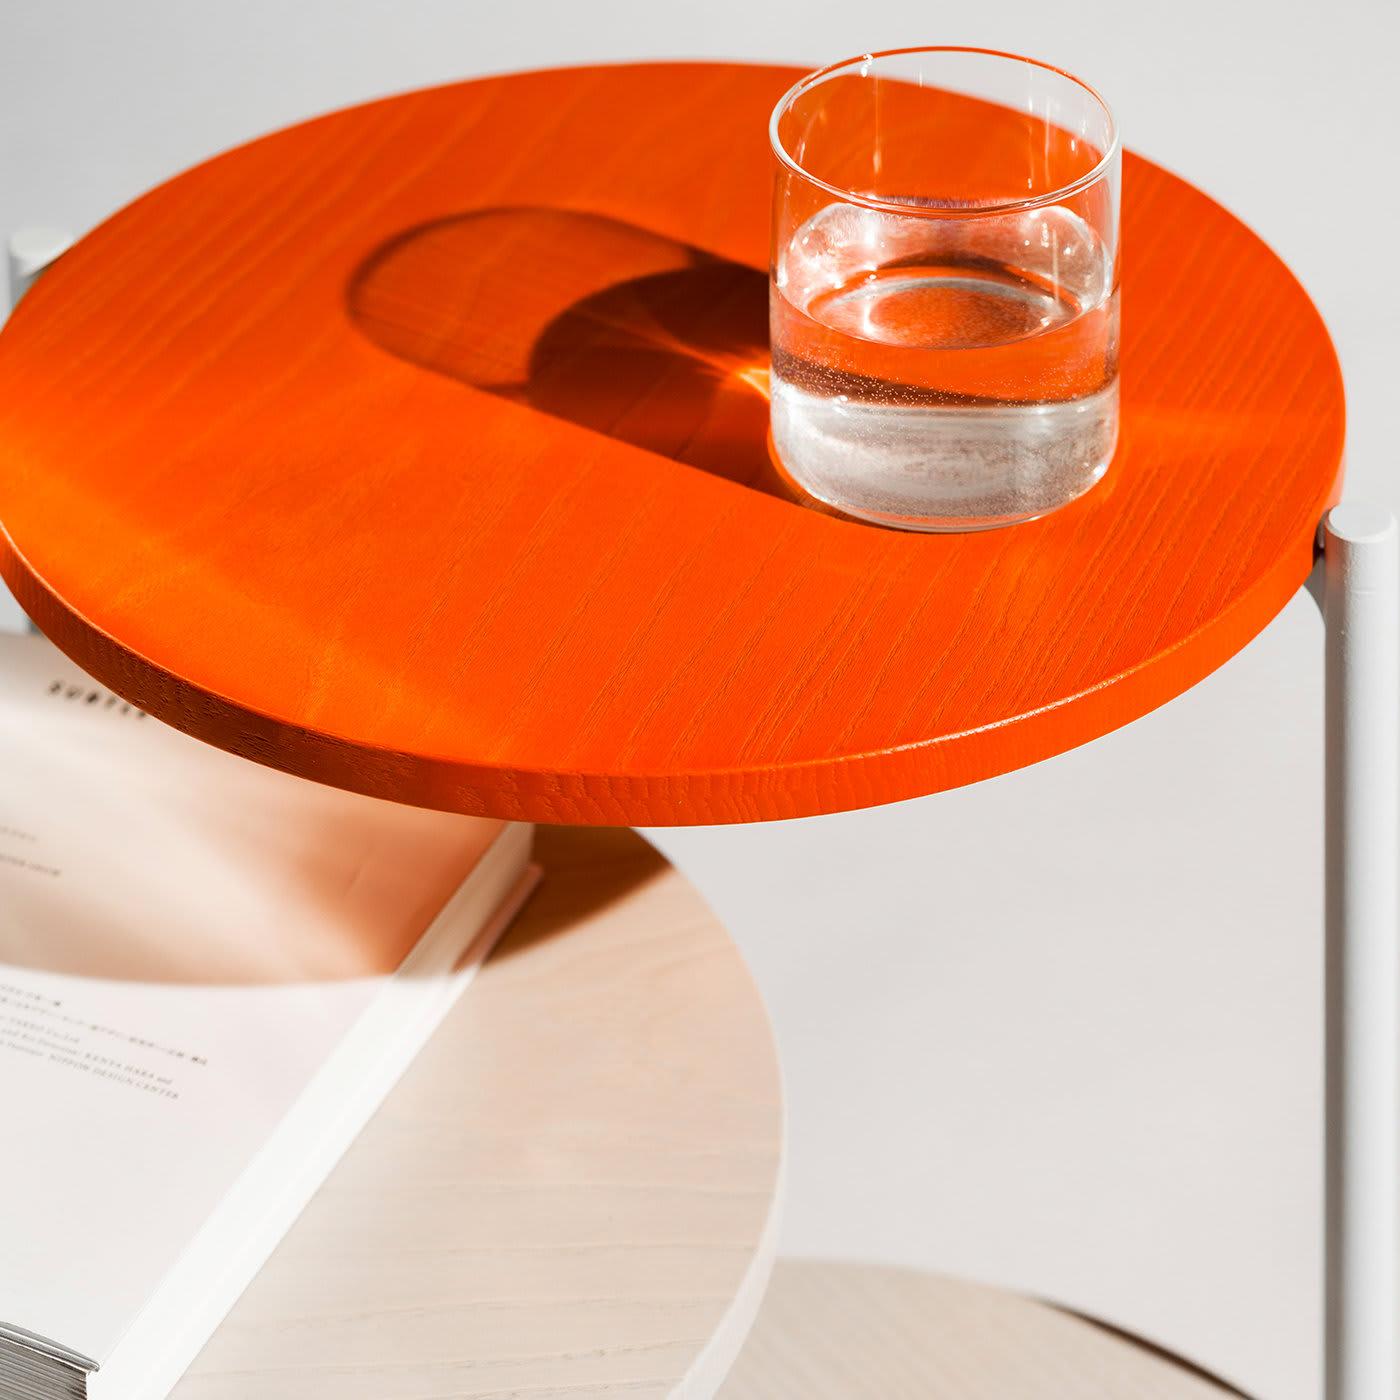 Dieser Triplo-Dreifachtisch mit seinem praktischen Design ist eine stilvolle und funktionelle Ergänzung für Ihren bevorzugten Wohnbereich. Mit drei Tischplatten aus farbigem Massivholz, die an einem Gestell aus grauem Metall befestigt sind, passt